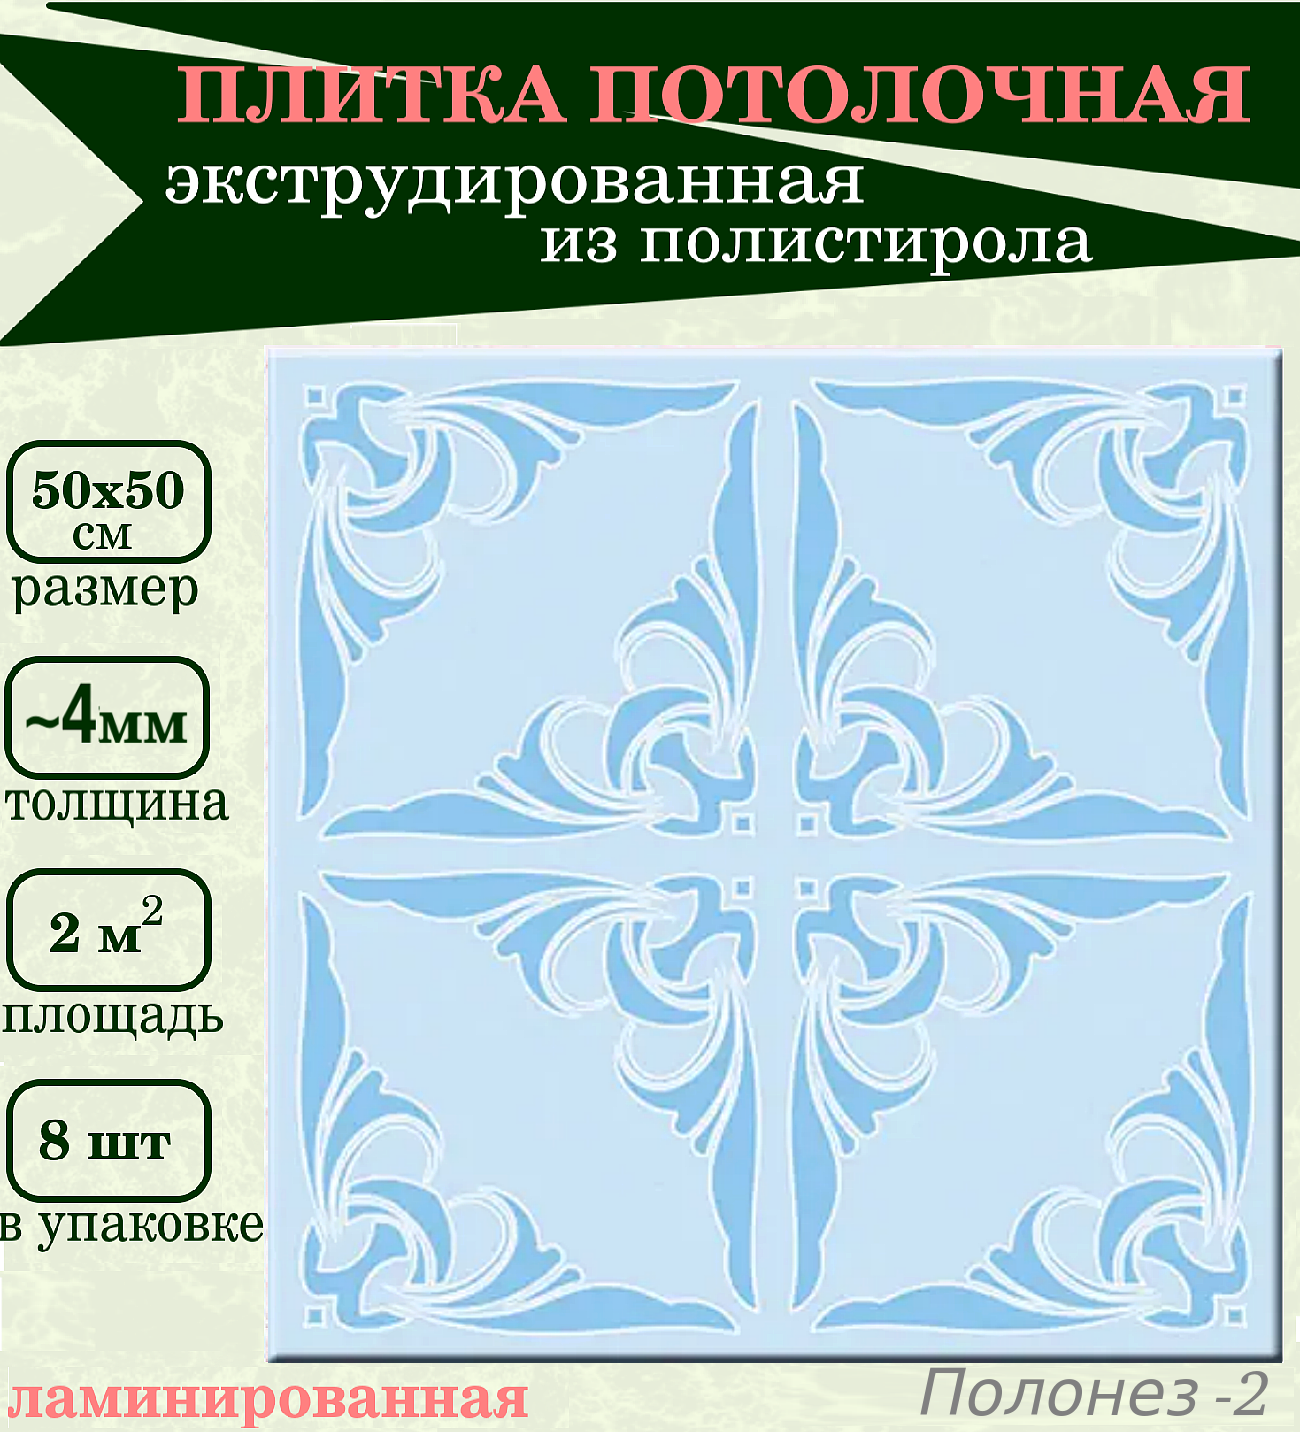 Плитка потолочная голубая с растительным рисунком из пенополистирола экструдированная